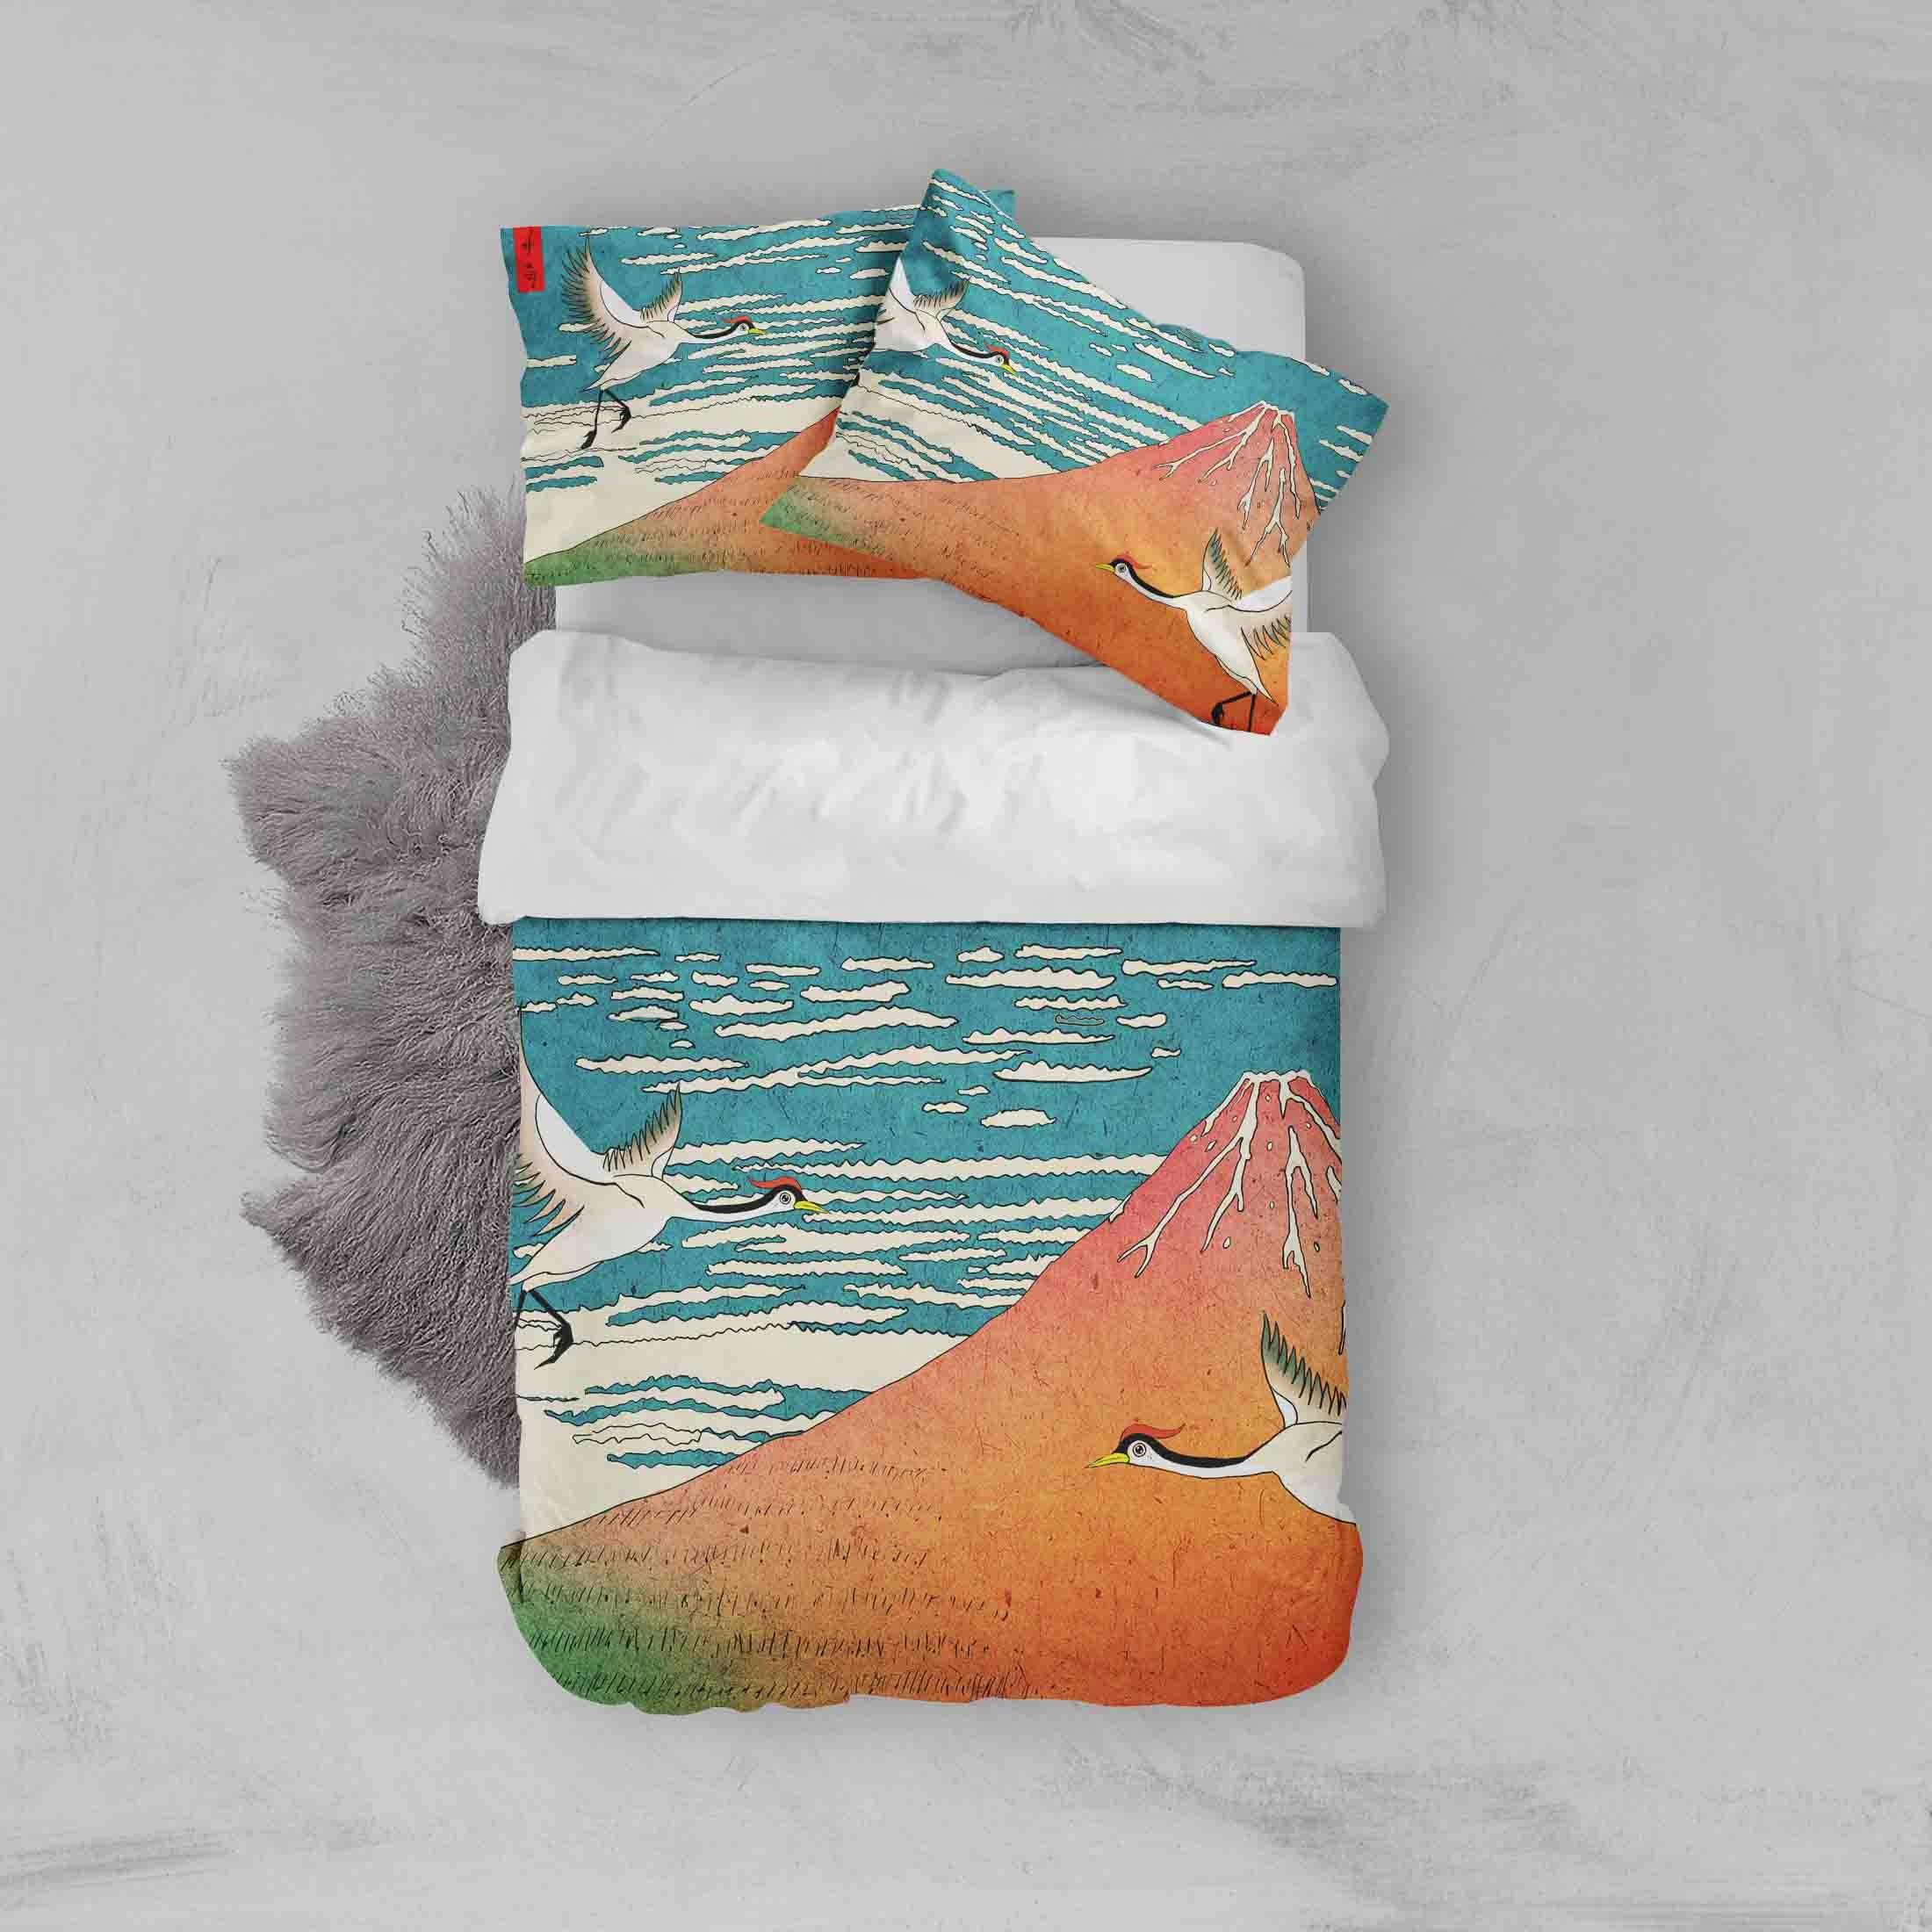 3D White Crane Sea Quilt Cover Set Bedding Set Pillowcases 78- Jess Art Decoration